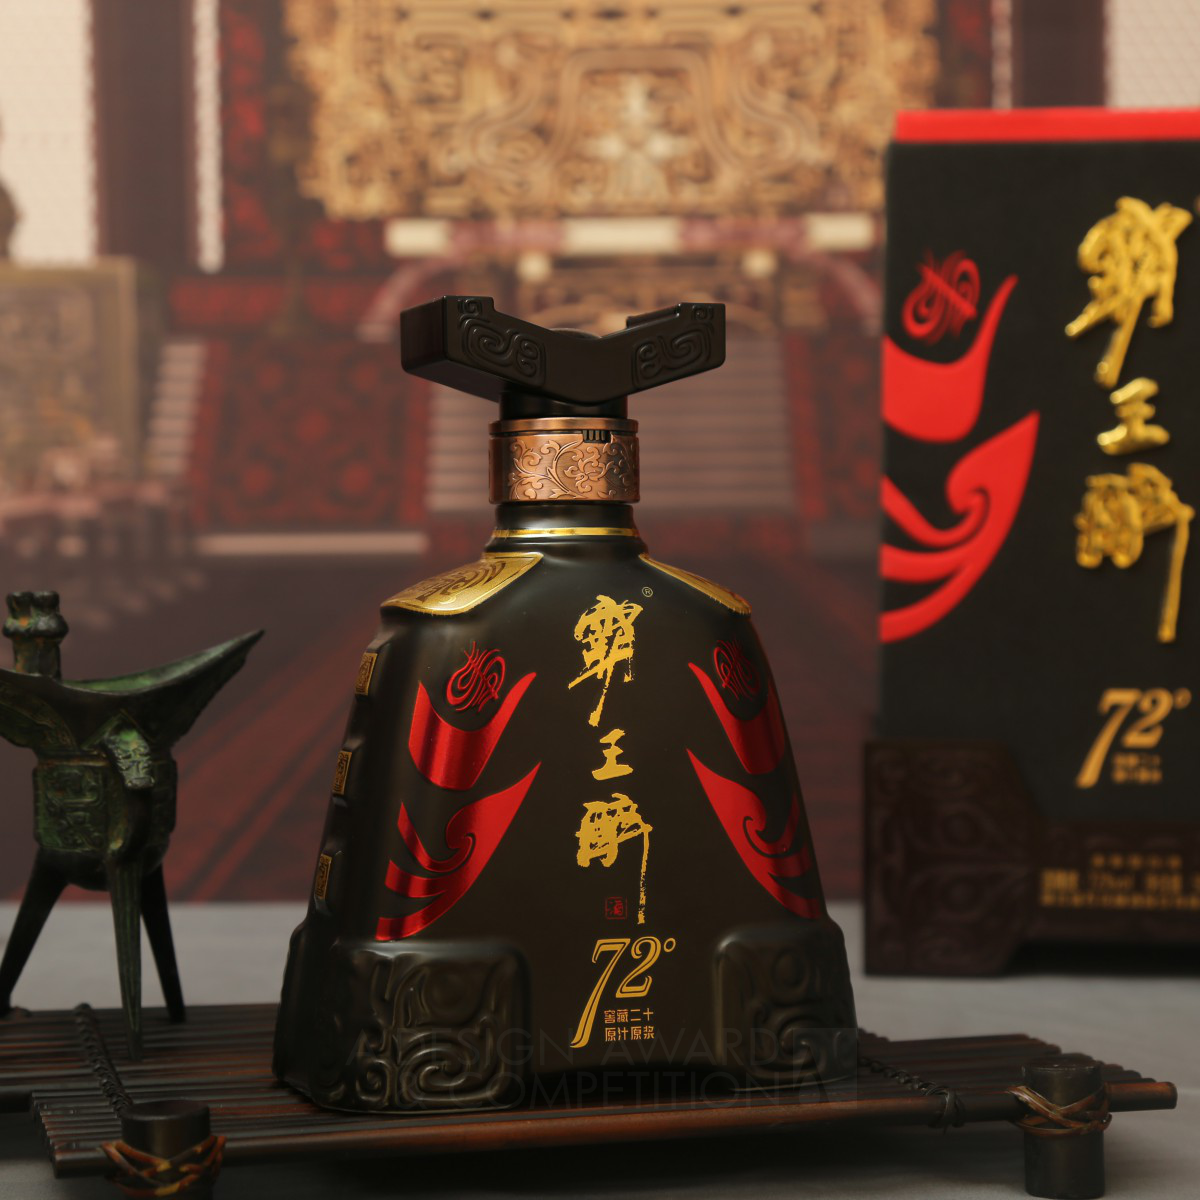 HUBEI SHIHUA LIQUOR CO.,LTD wins Bronze at the prestigious A' Packaging Design Award with 72 Xiangyu The Conqueror Liquor Chinese Baijiu.